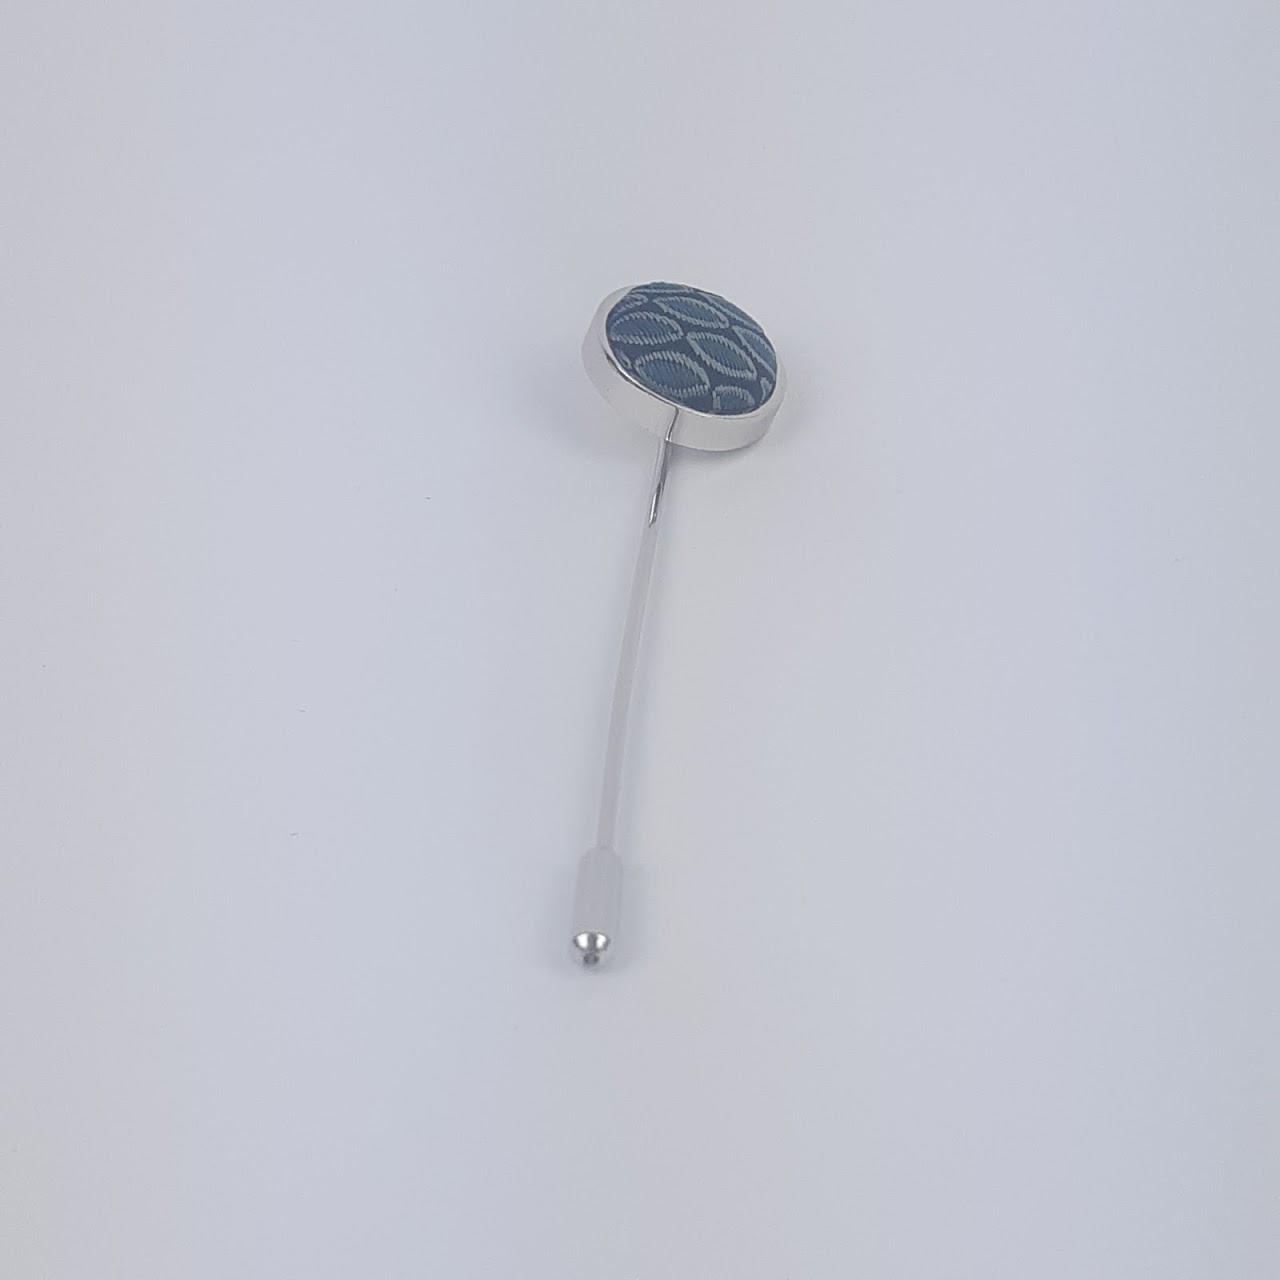 Giorgio Armani Sterling Silver & Embroidered Tie Pin